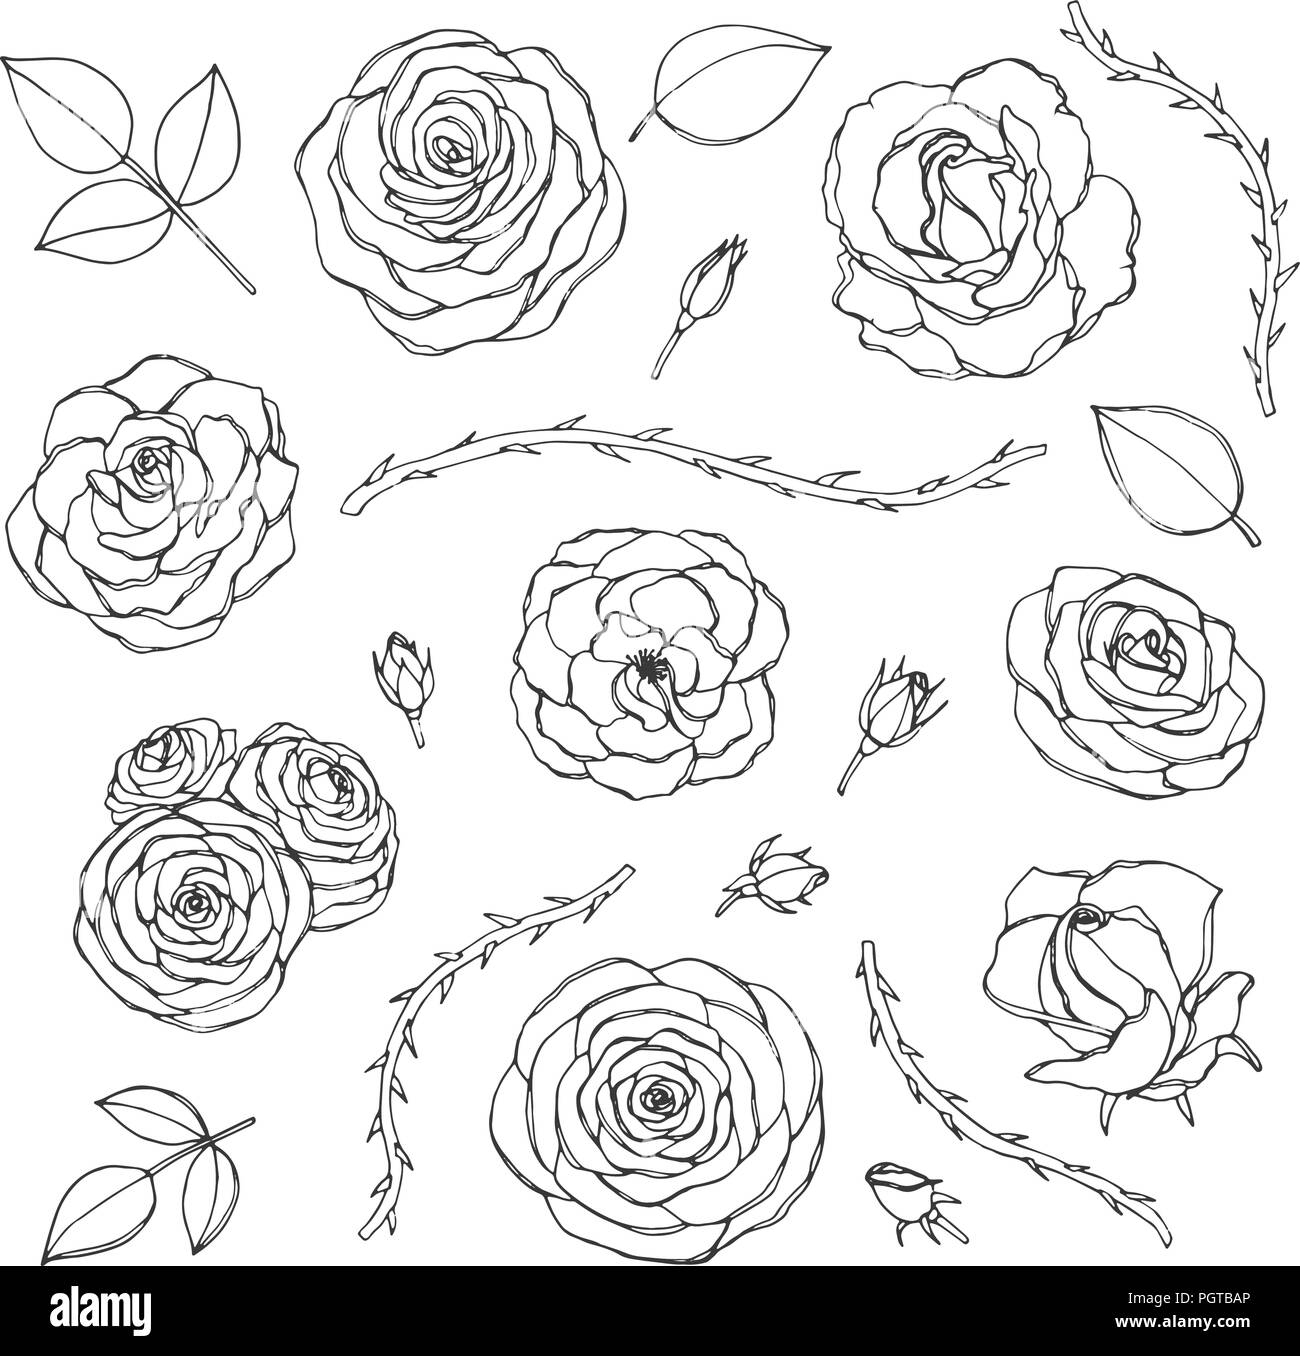 Vektor Hand gezeichnet von Rosen mit Knospen, Blätter und dornigen Stiele  line Art auf weißem Hintergrund. Blumen Sammlung von Blüten in s  Stock-Vektorgrafik - Alamy